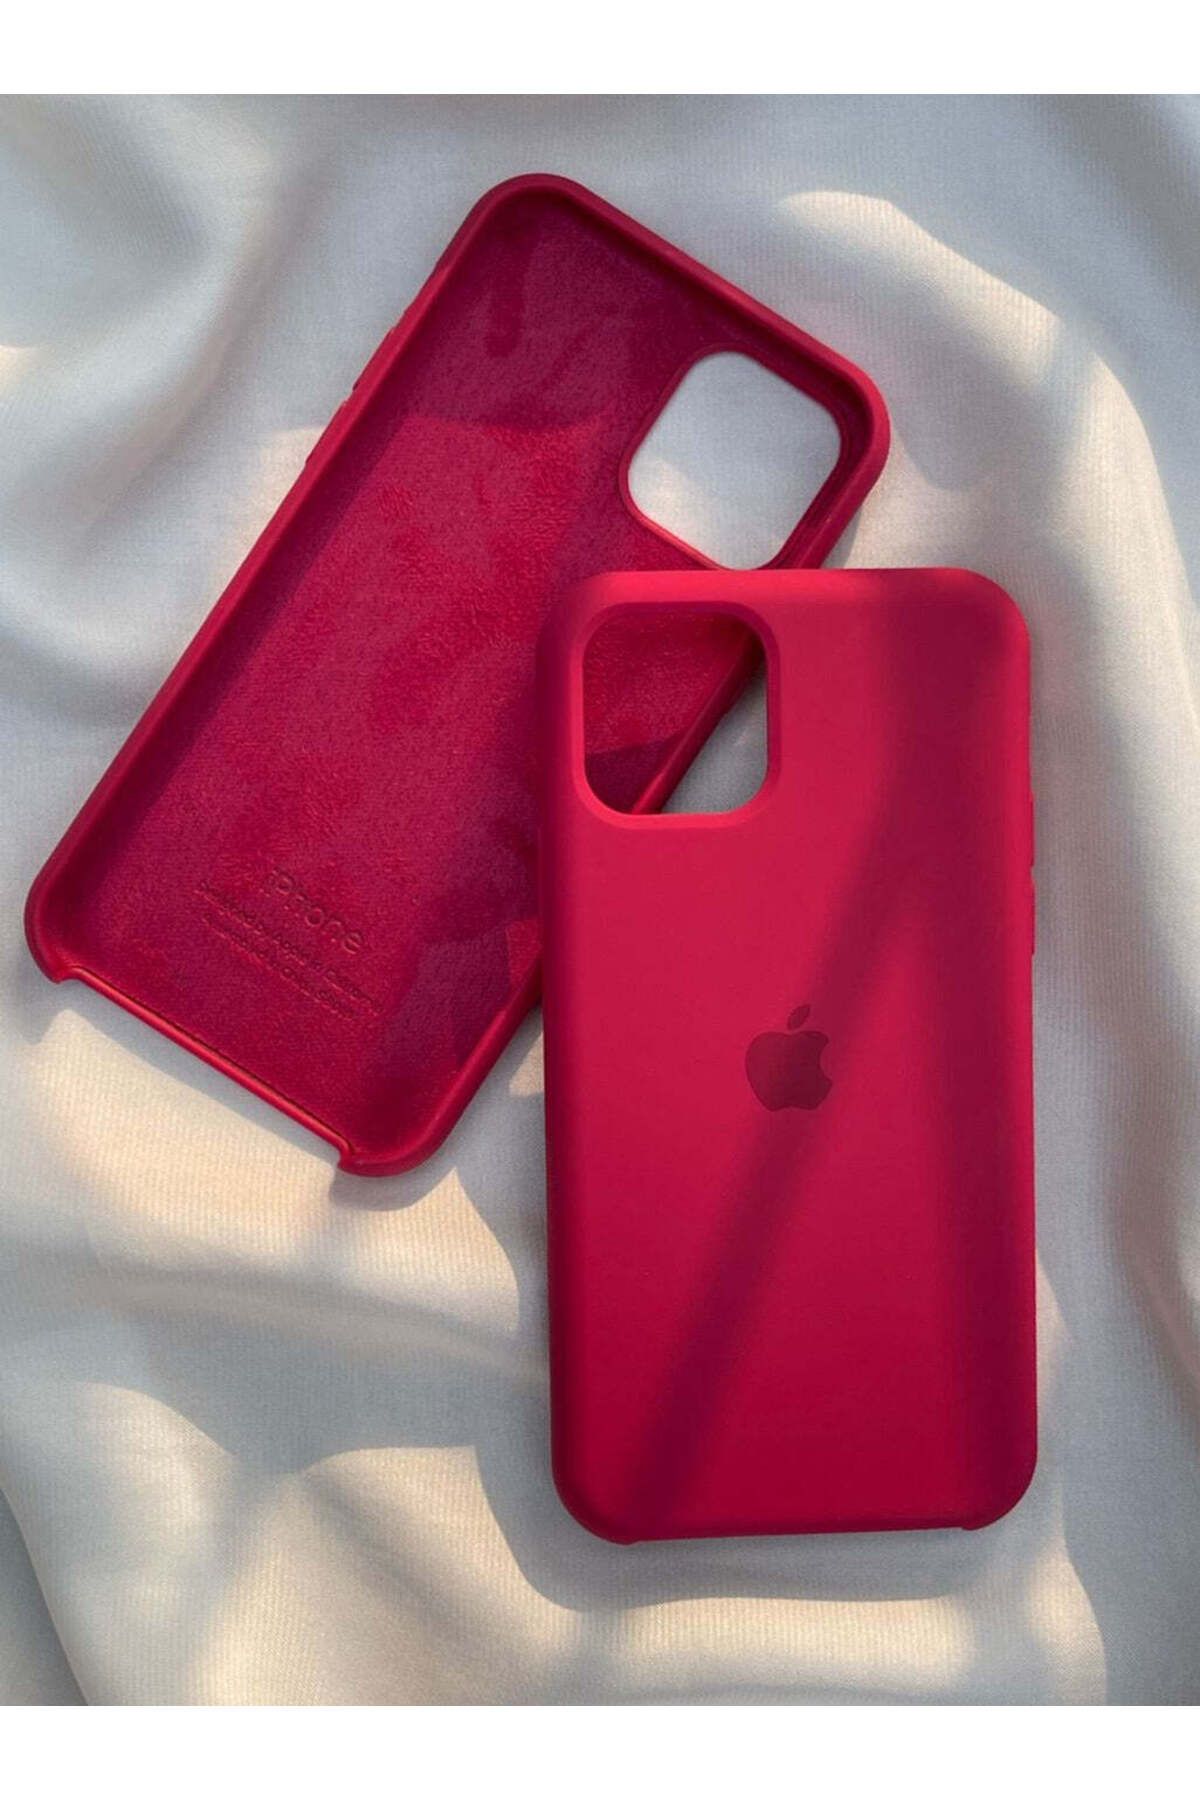 ALCİNOUS Iphone 11 Uyumlu Lansman Premium Kalite Kılıf - Kırmızı